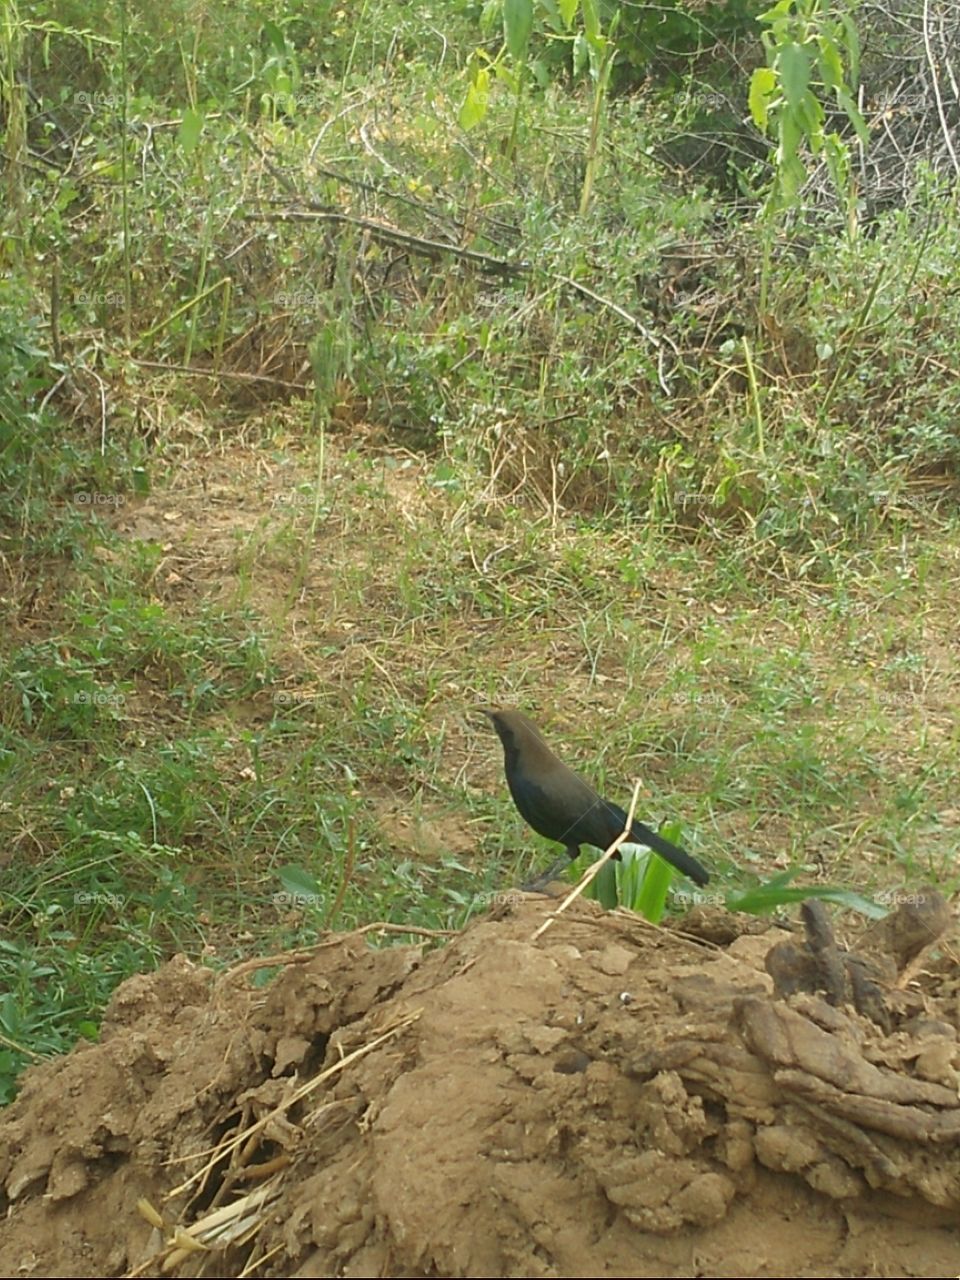 black bird